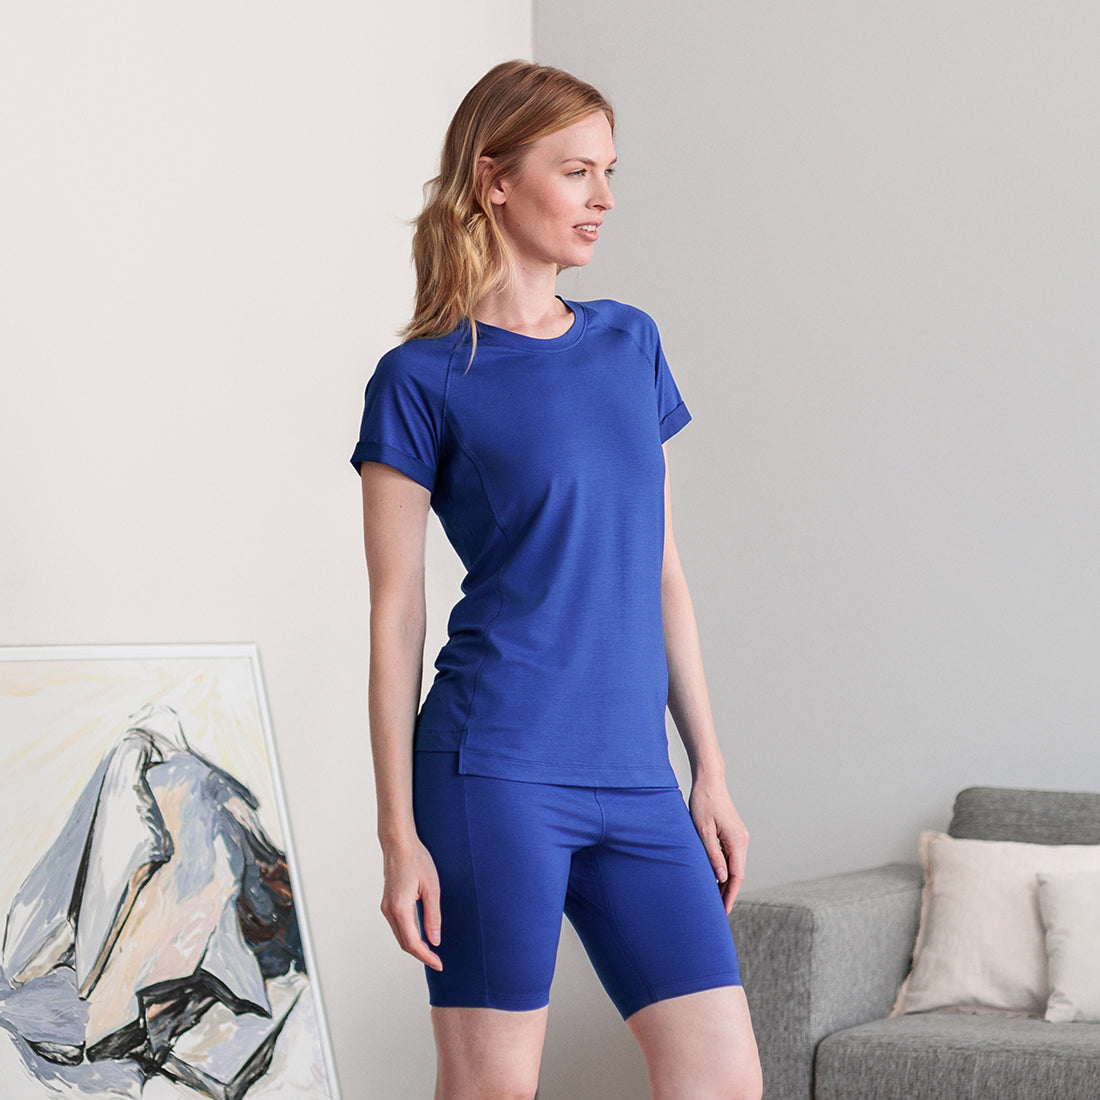 Muscle recovery sleep t-shirt women || Azure blue